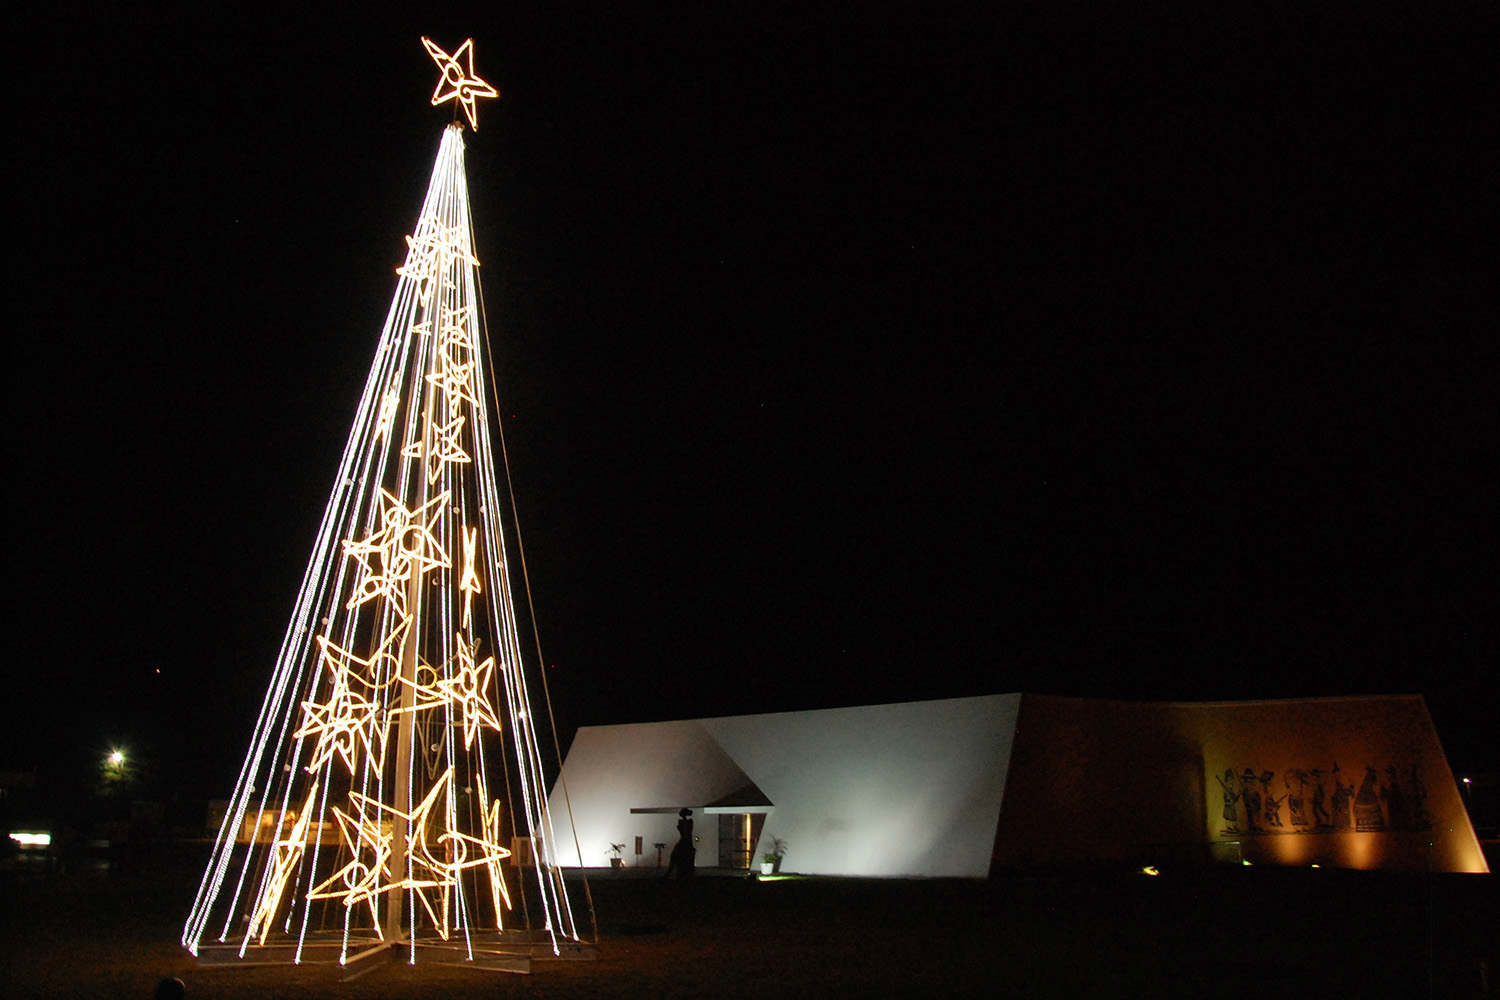 Estação Cabo Branco ganha iluminação natalina com árvore de 15 metros |  Prefeitura Municipal de João Pessoa